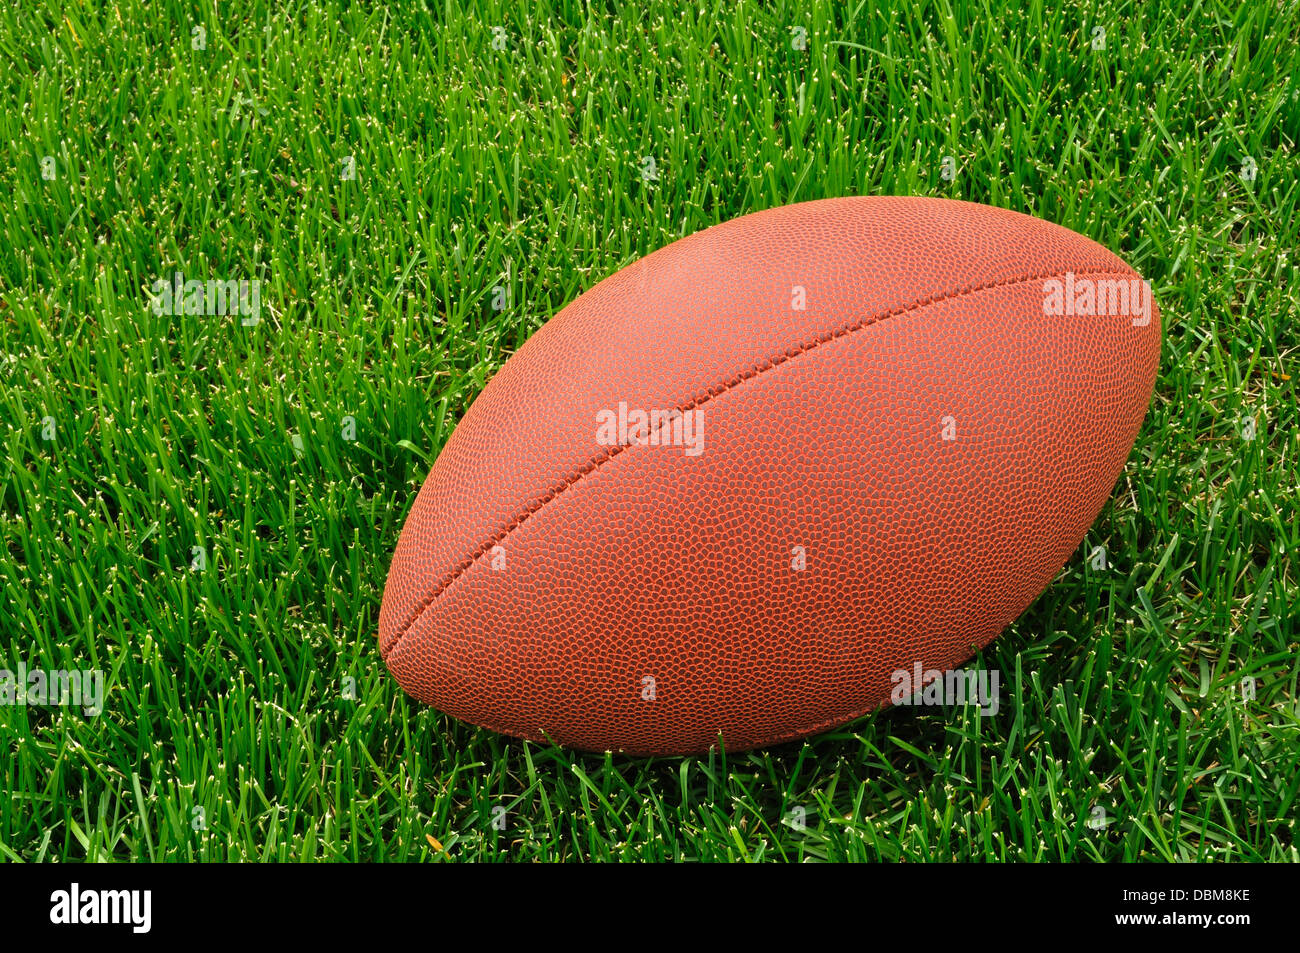 Fußball auf einem Rasen-Spielfeld Stockfoto